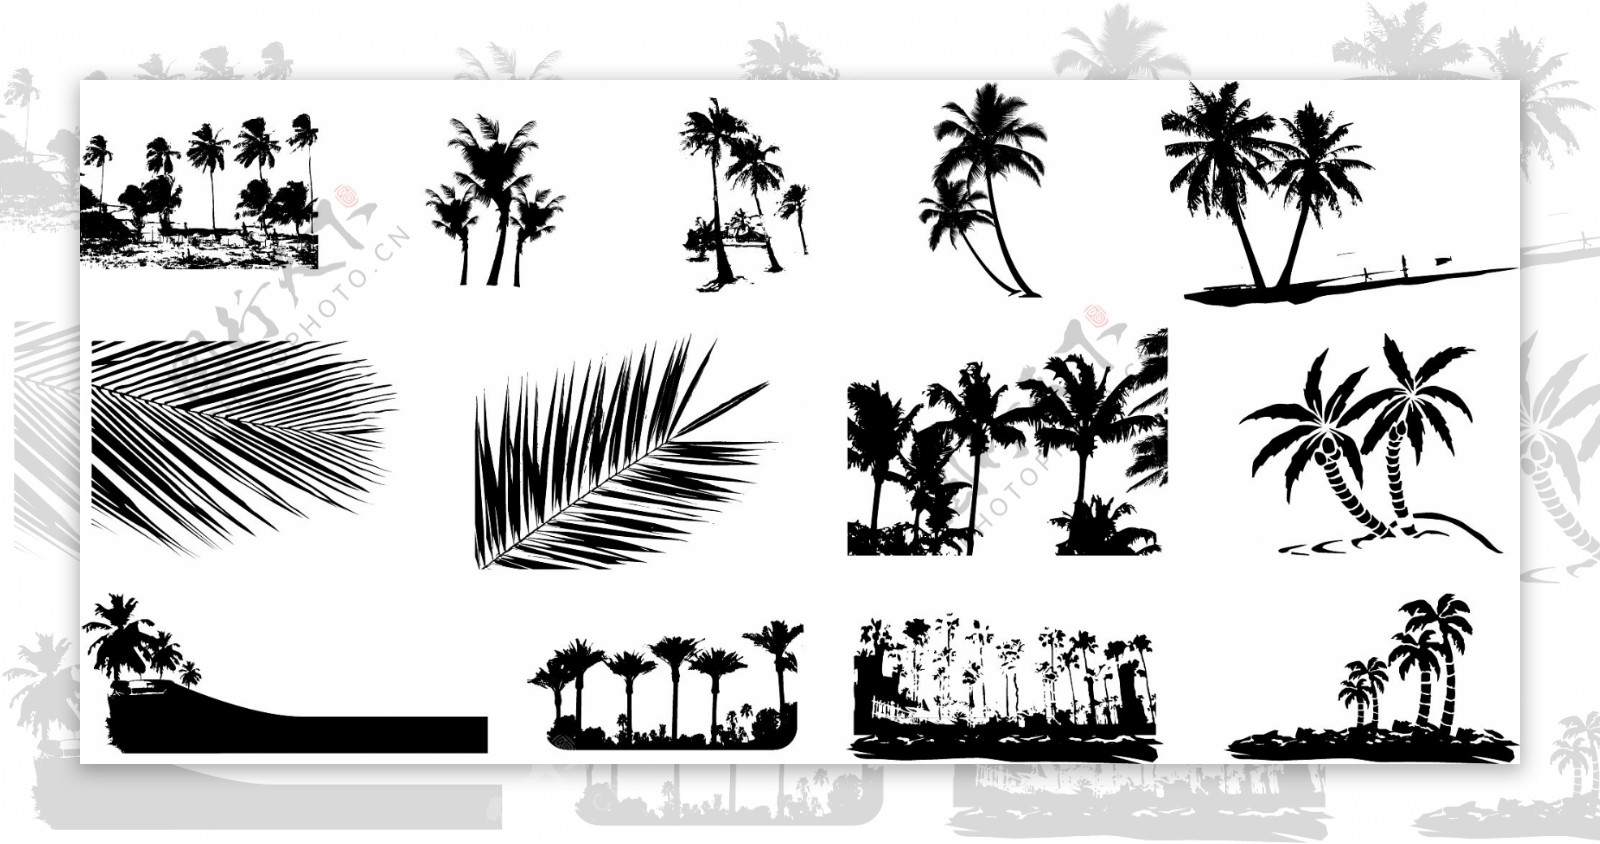 椰树剪影元素矢量素材图片